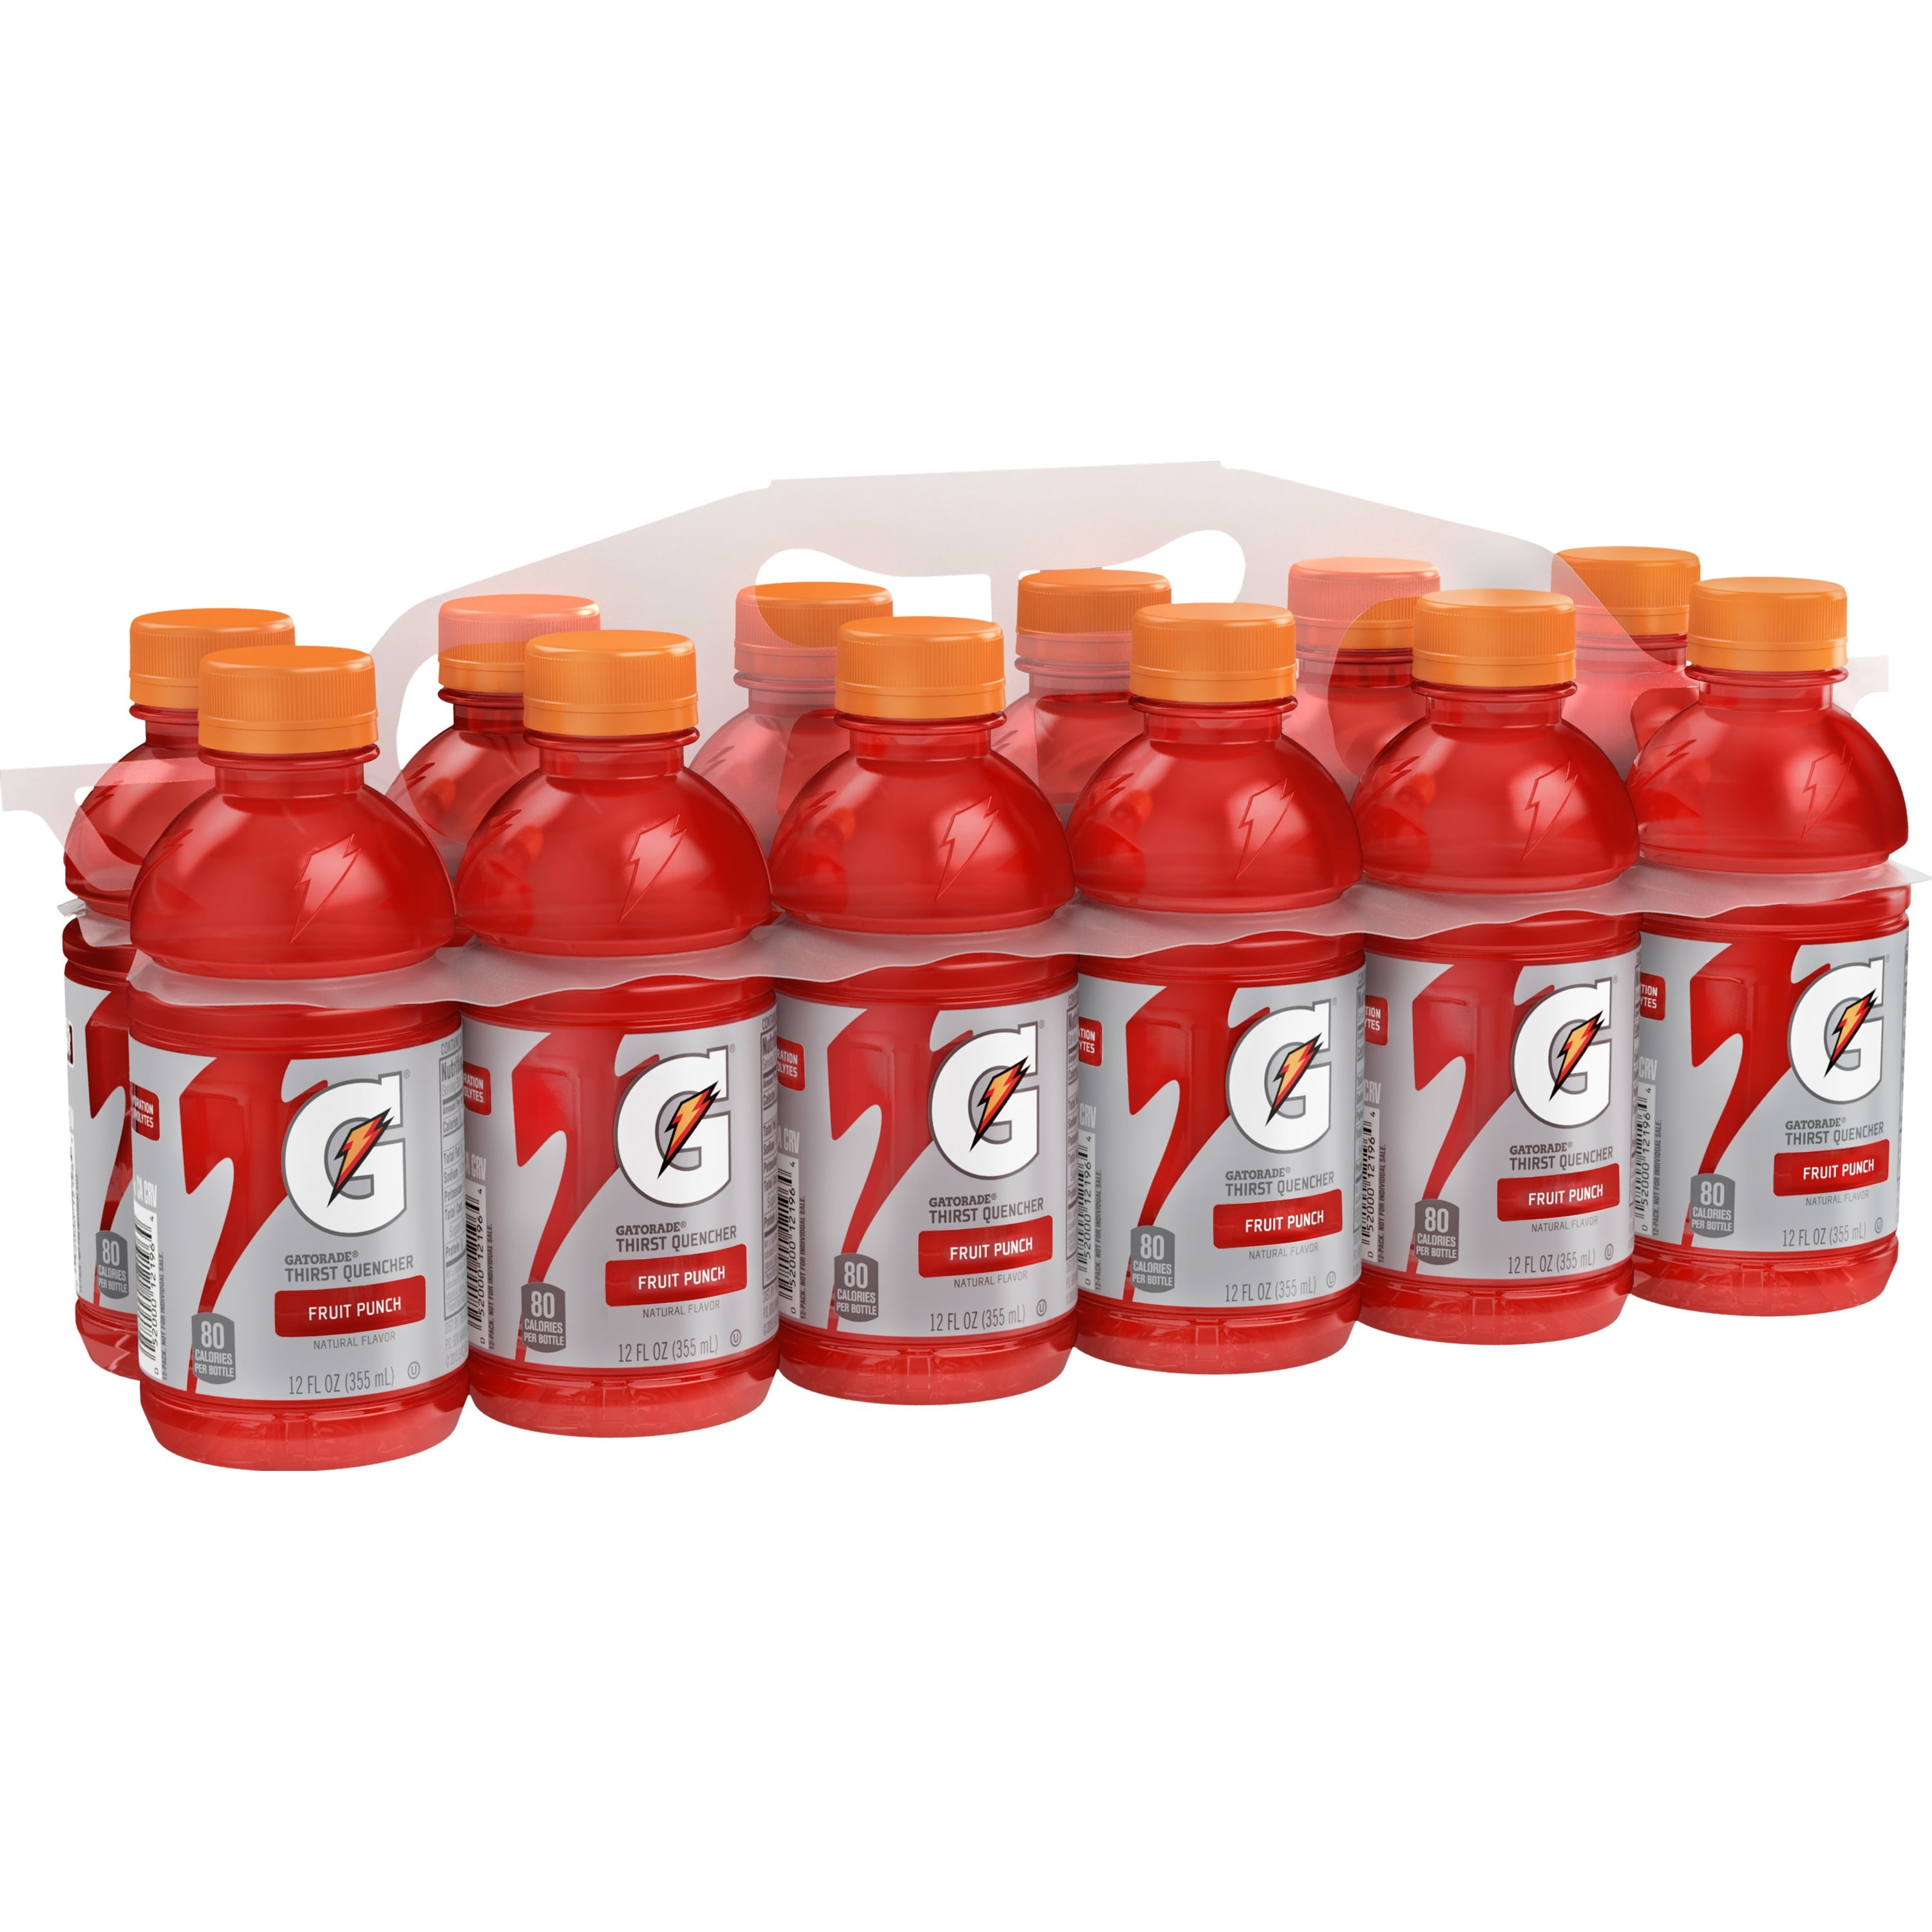 (12 Bottles) Gatorade Thirst Quencher Sports Drink, Fruit Punch, 12 fl oz